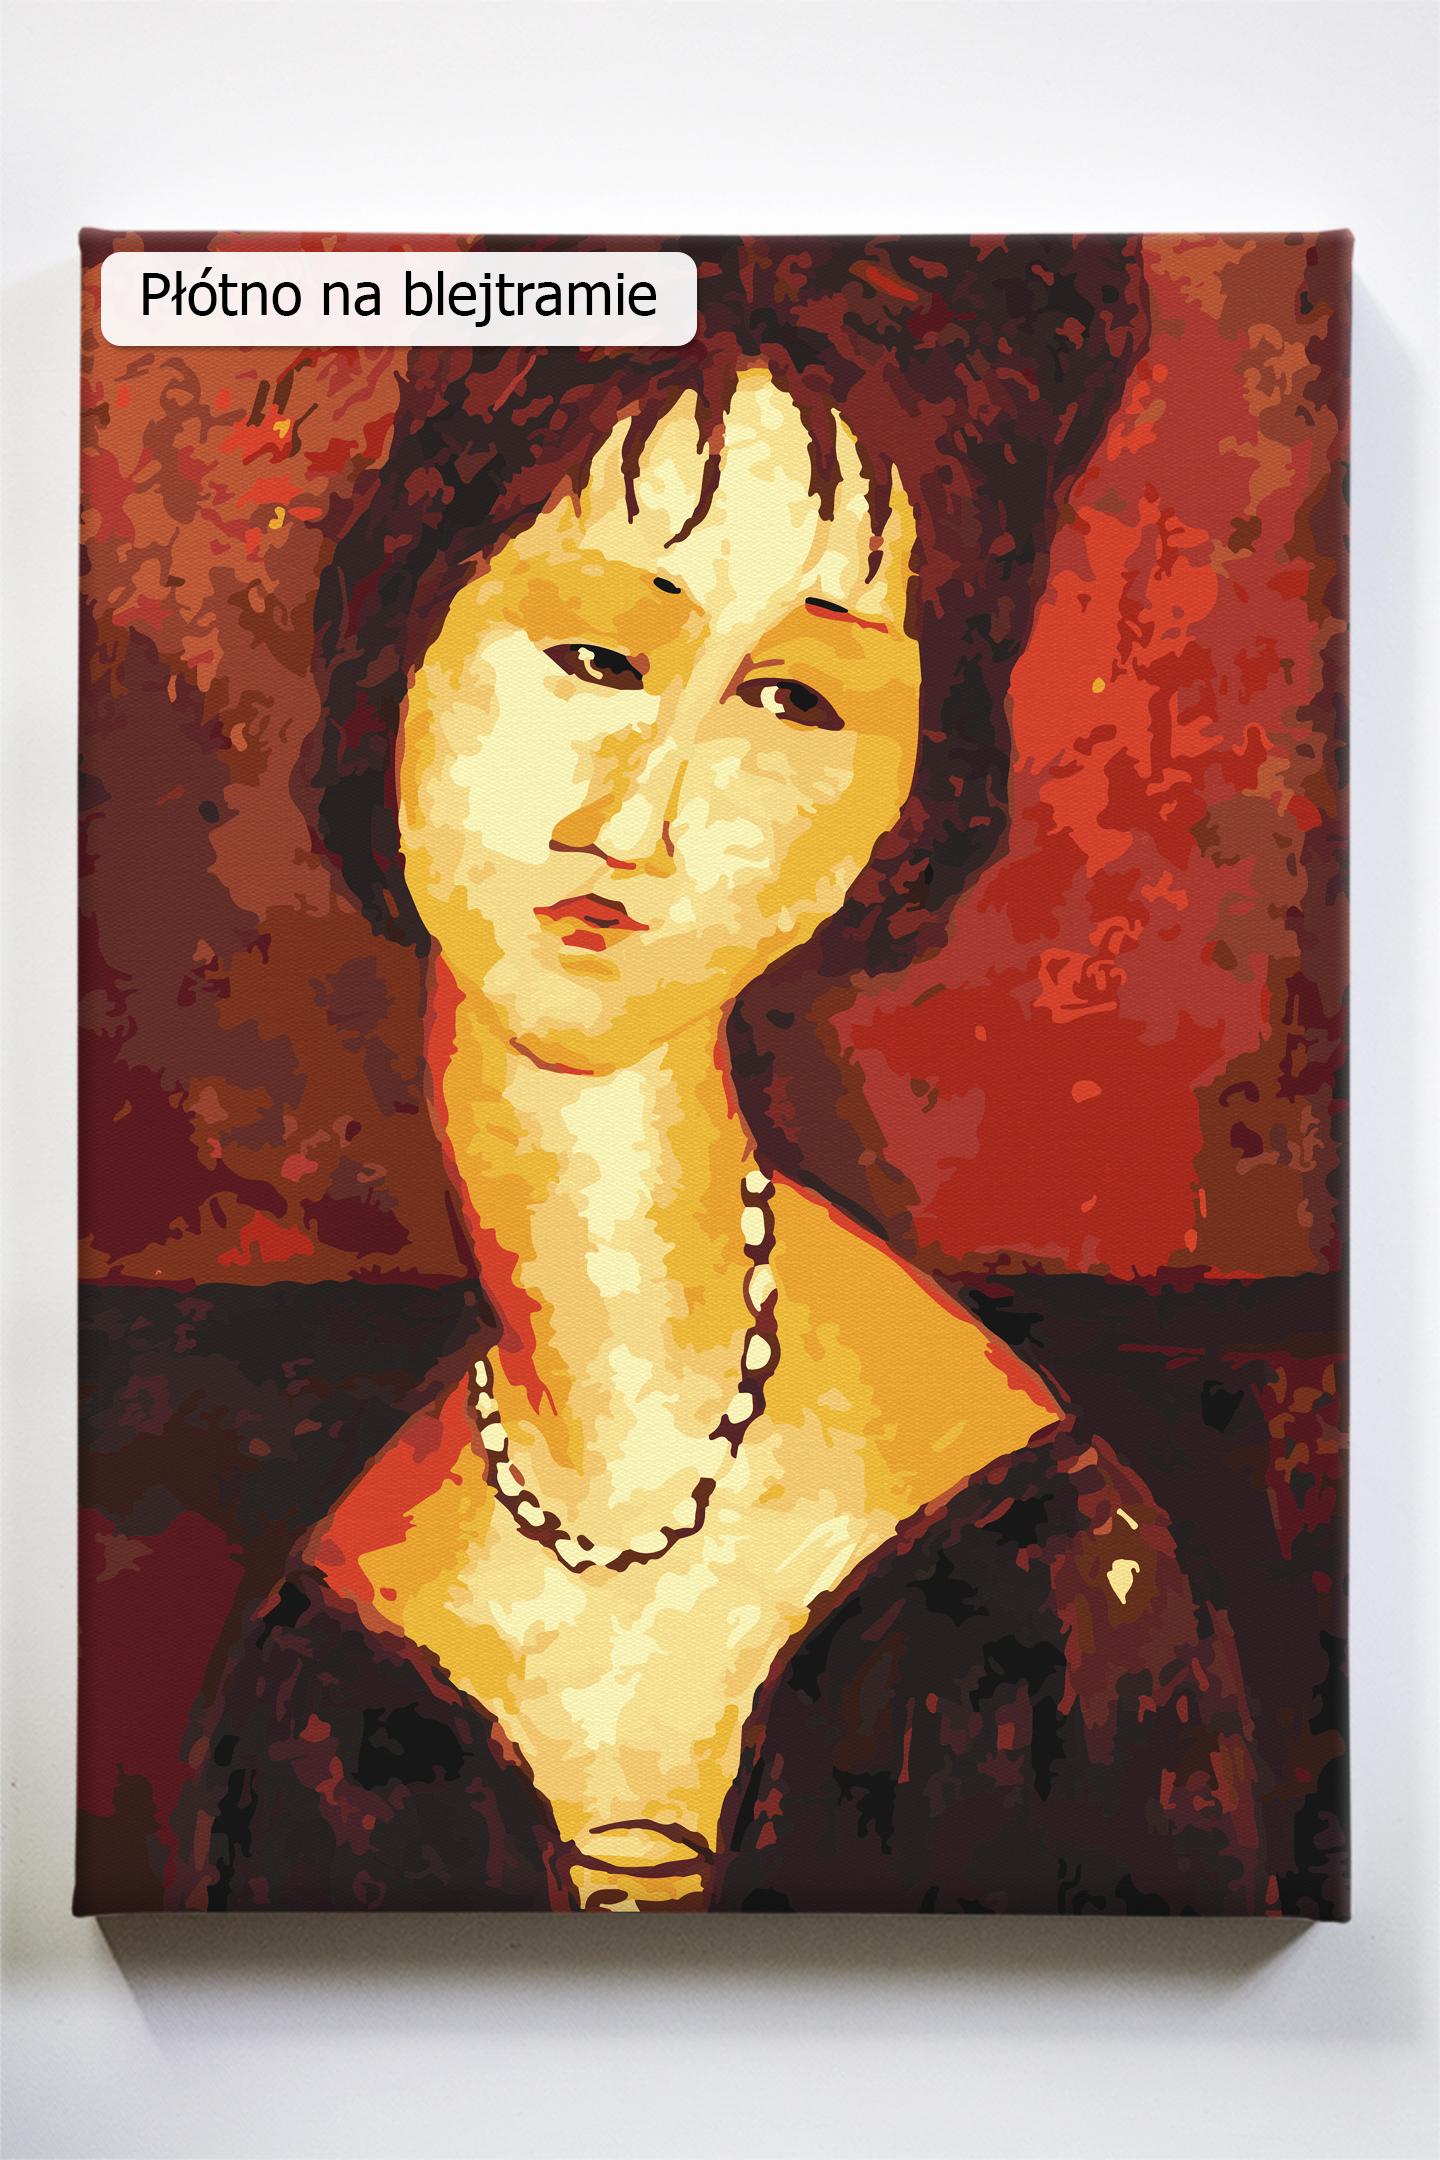 Amedeo Modigliani, Beatrice Hastings, akrylowo.pl sklep z obrazami do malowania po numerach, reprodukcjami wielkich artystów i malarzy